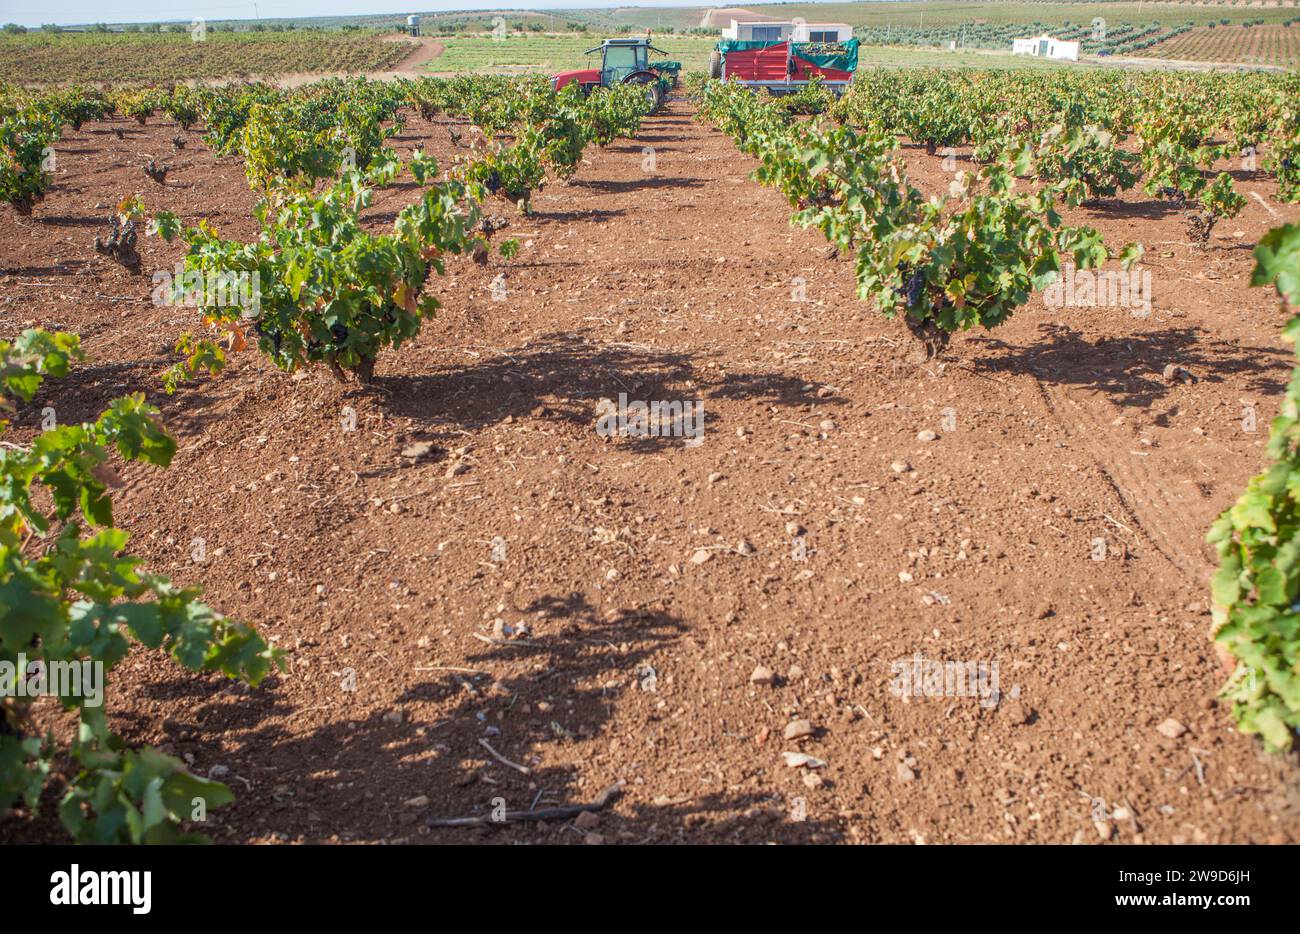 Weinbautraktor in Betrieb während der Erntesaison. Maschinen zum Transport von handverlesenen Trauben Stockfoto